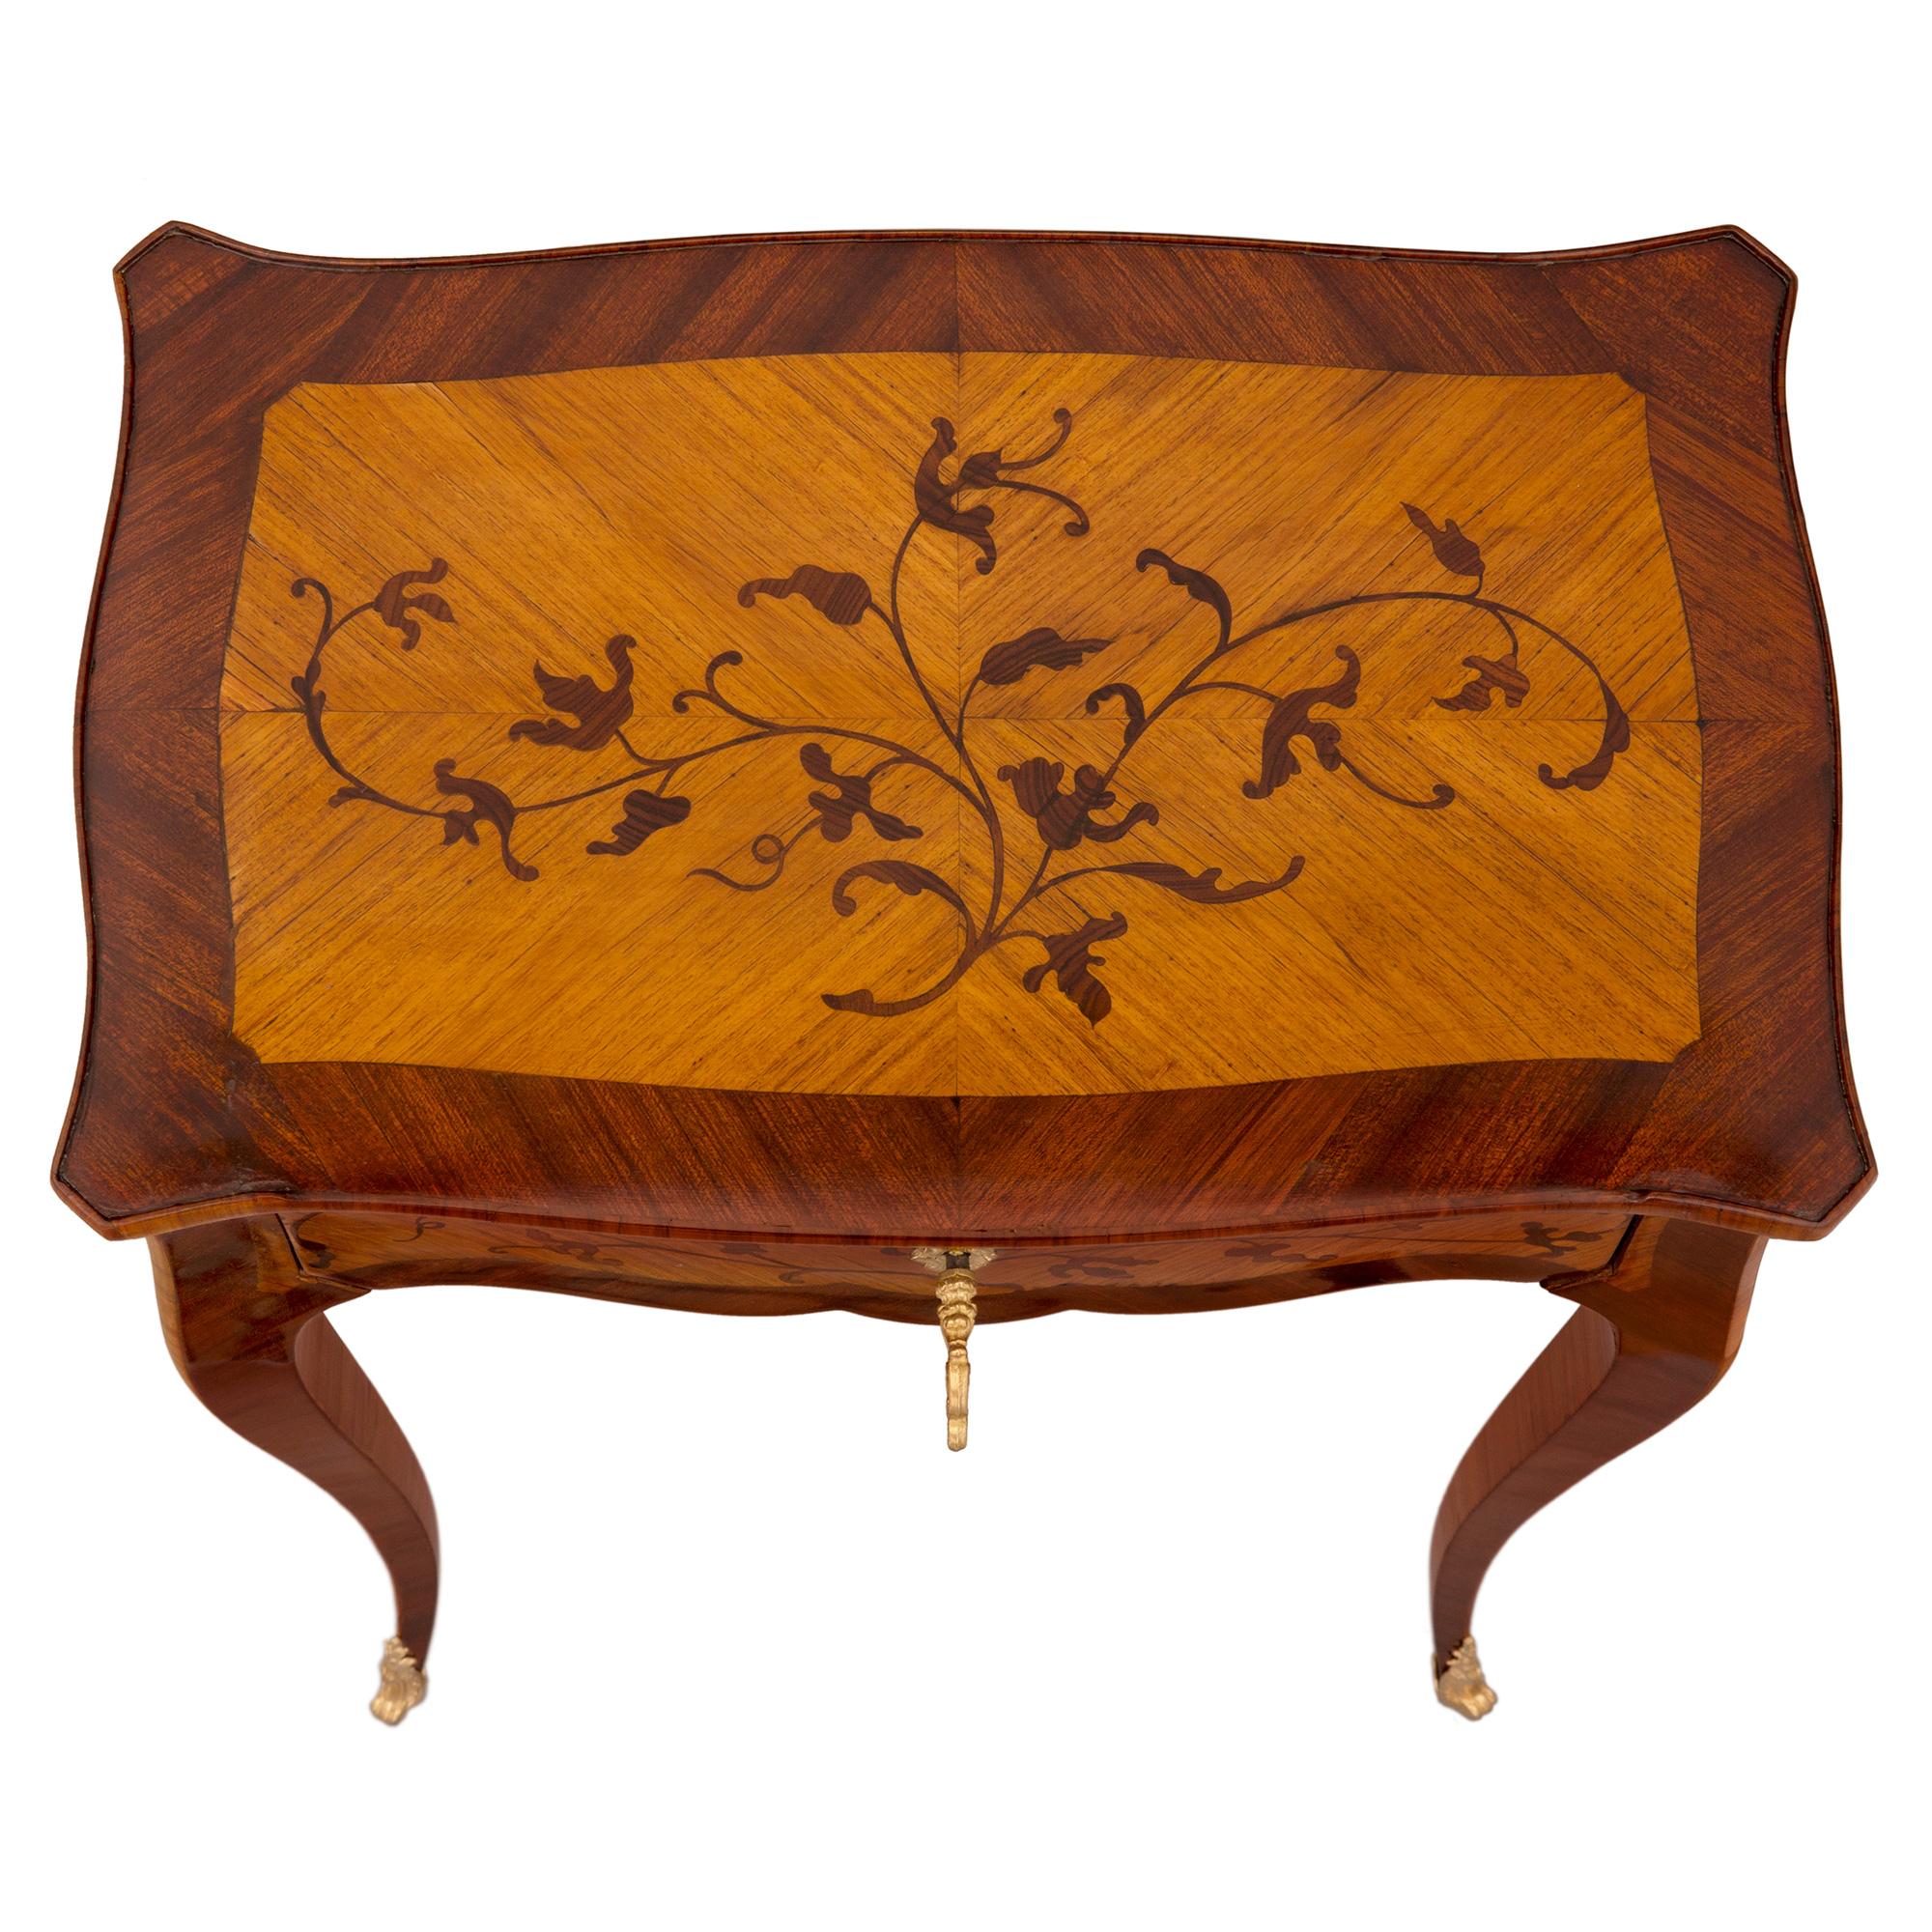 Ein charmanter französischer Beistelltisch aus Königsholz, Tulpenholz und Ormolu aus dem 19. Jahrhundert im Stil Louis XV. Der Tisch steht auf eleganten, schlanken, sich verjüngenden Cabriole-Beinen mit fein eingepassten Ormolu-Sabots. Der gewellte